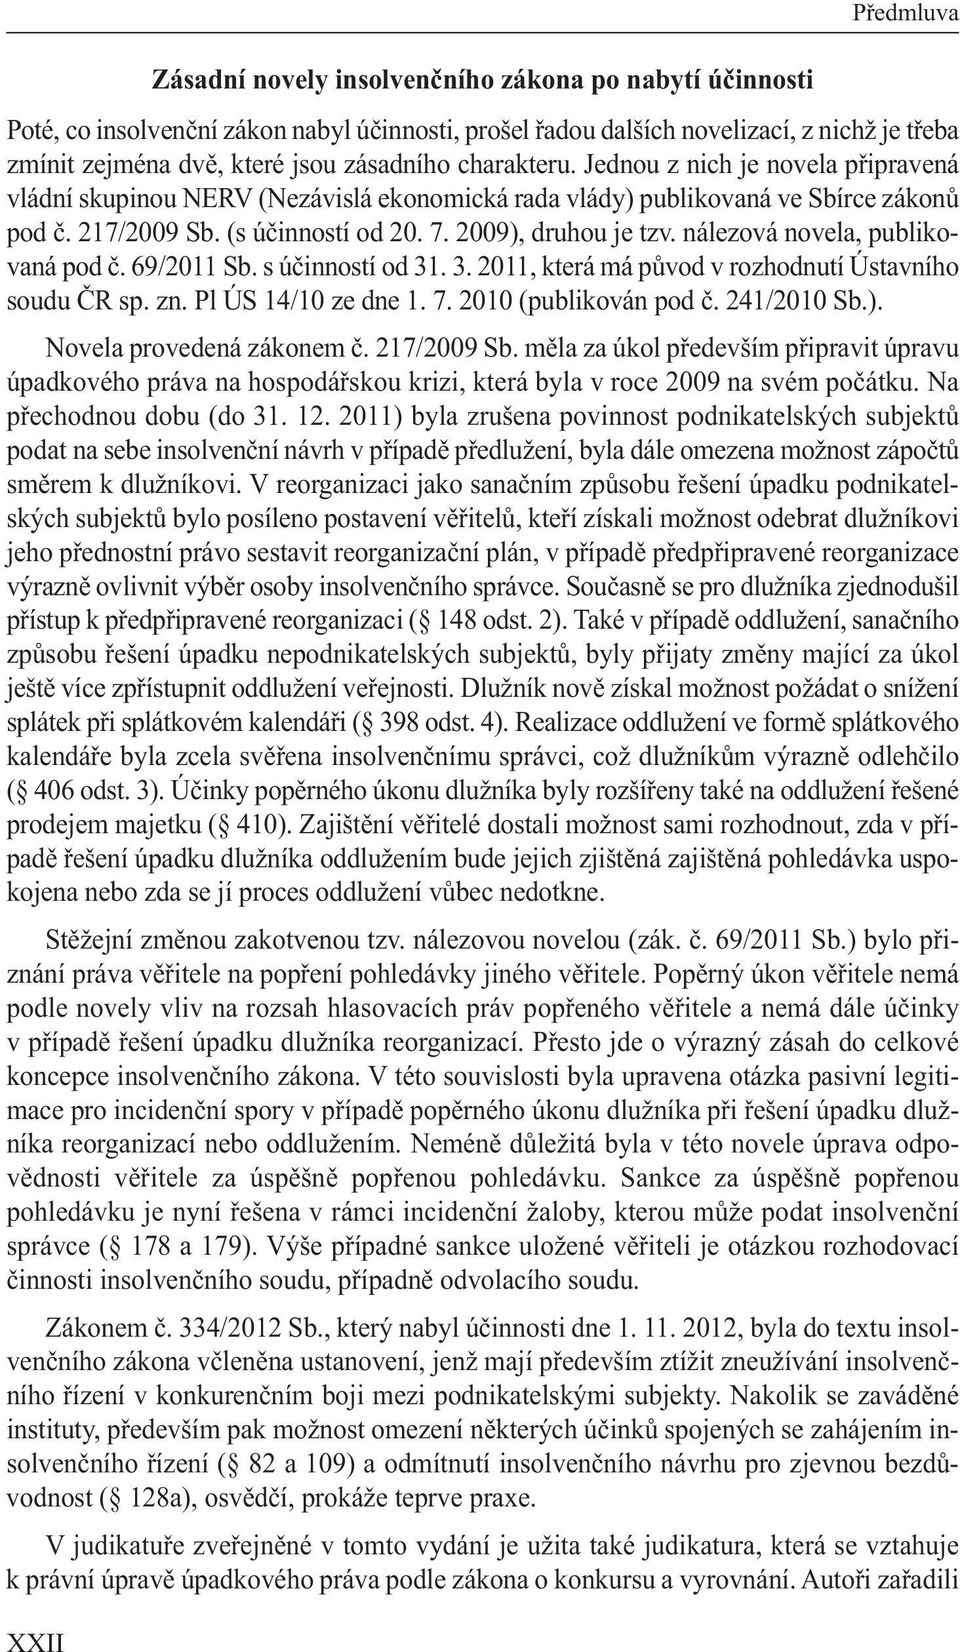 2009), druhou je tzv. nálezová novela, publikovaná pod č. 69/2011 Sb. s účinností od 31. 3. 2011, která má původ v rozhodnutí Ústavního soudu ČR sp. zn. Pl ÚS 14/10 ze dne 1. 7.